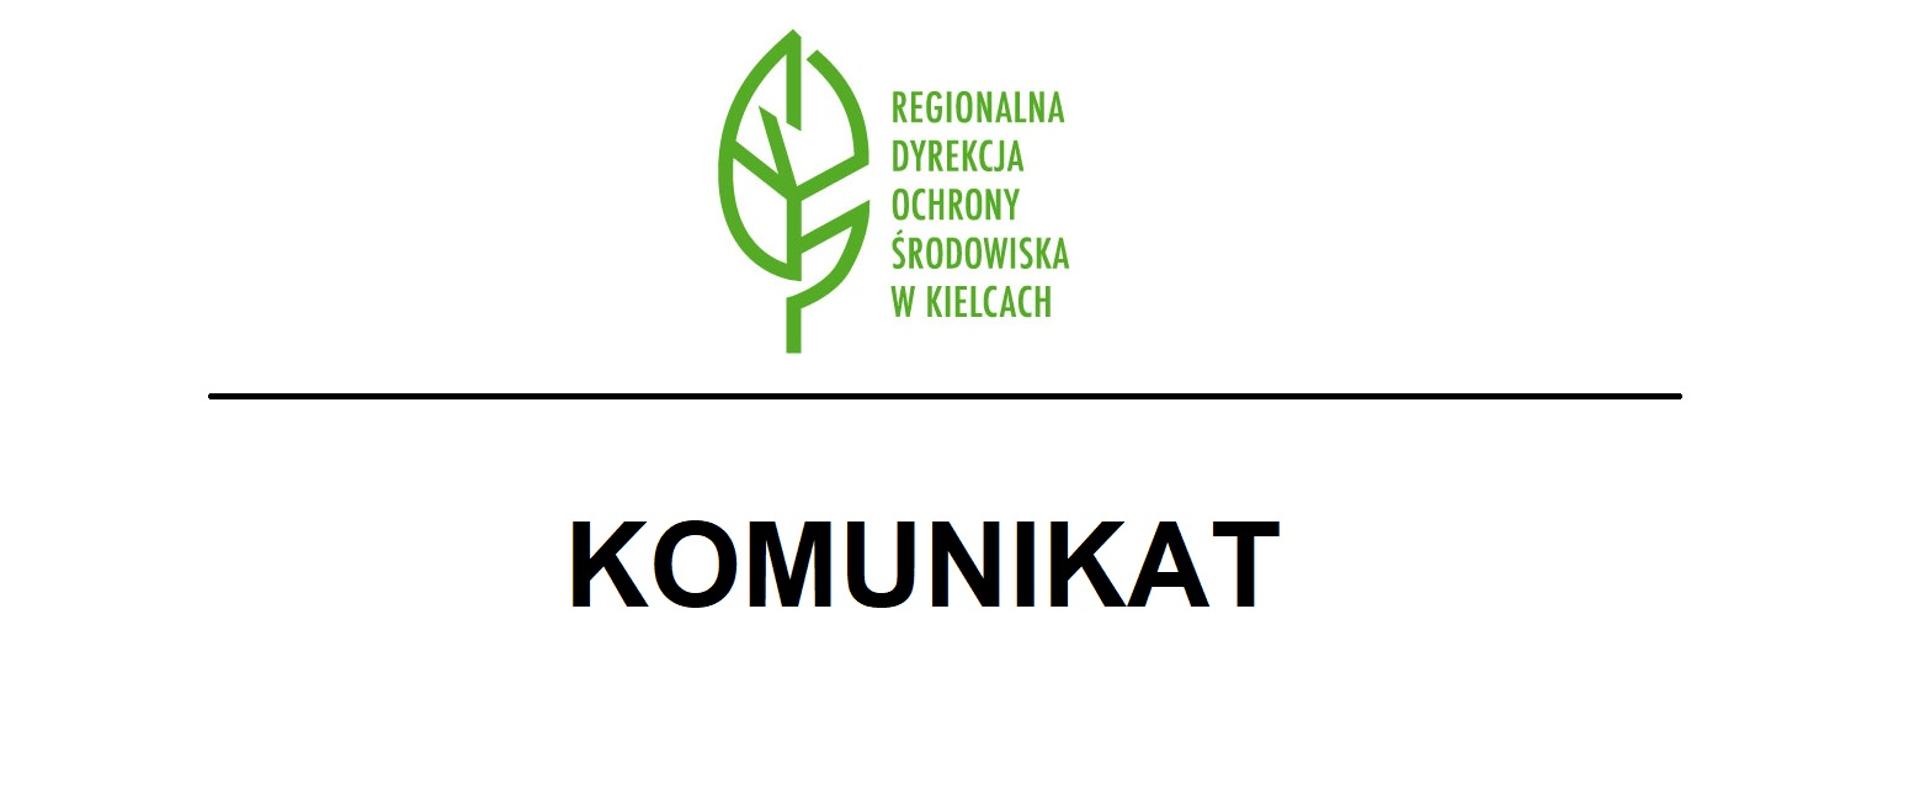  Na białym tle logotyp Regionalnej Dyrekcji Ochrony Środowiska w Kielcach (zielony liść i zielony napis Regionalna Dyrekcja Ochrony Środowiska w Kielcach), pod czarną poziomą kreską czarny napis KOMUNIKAT. 